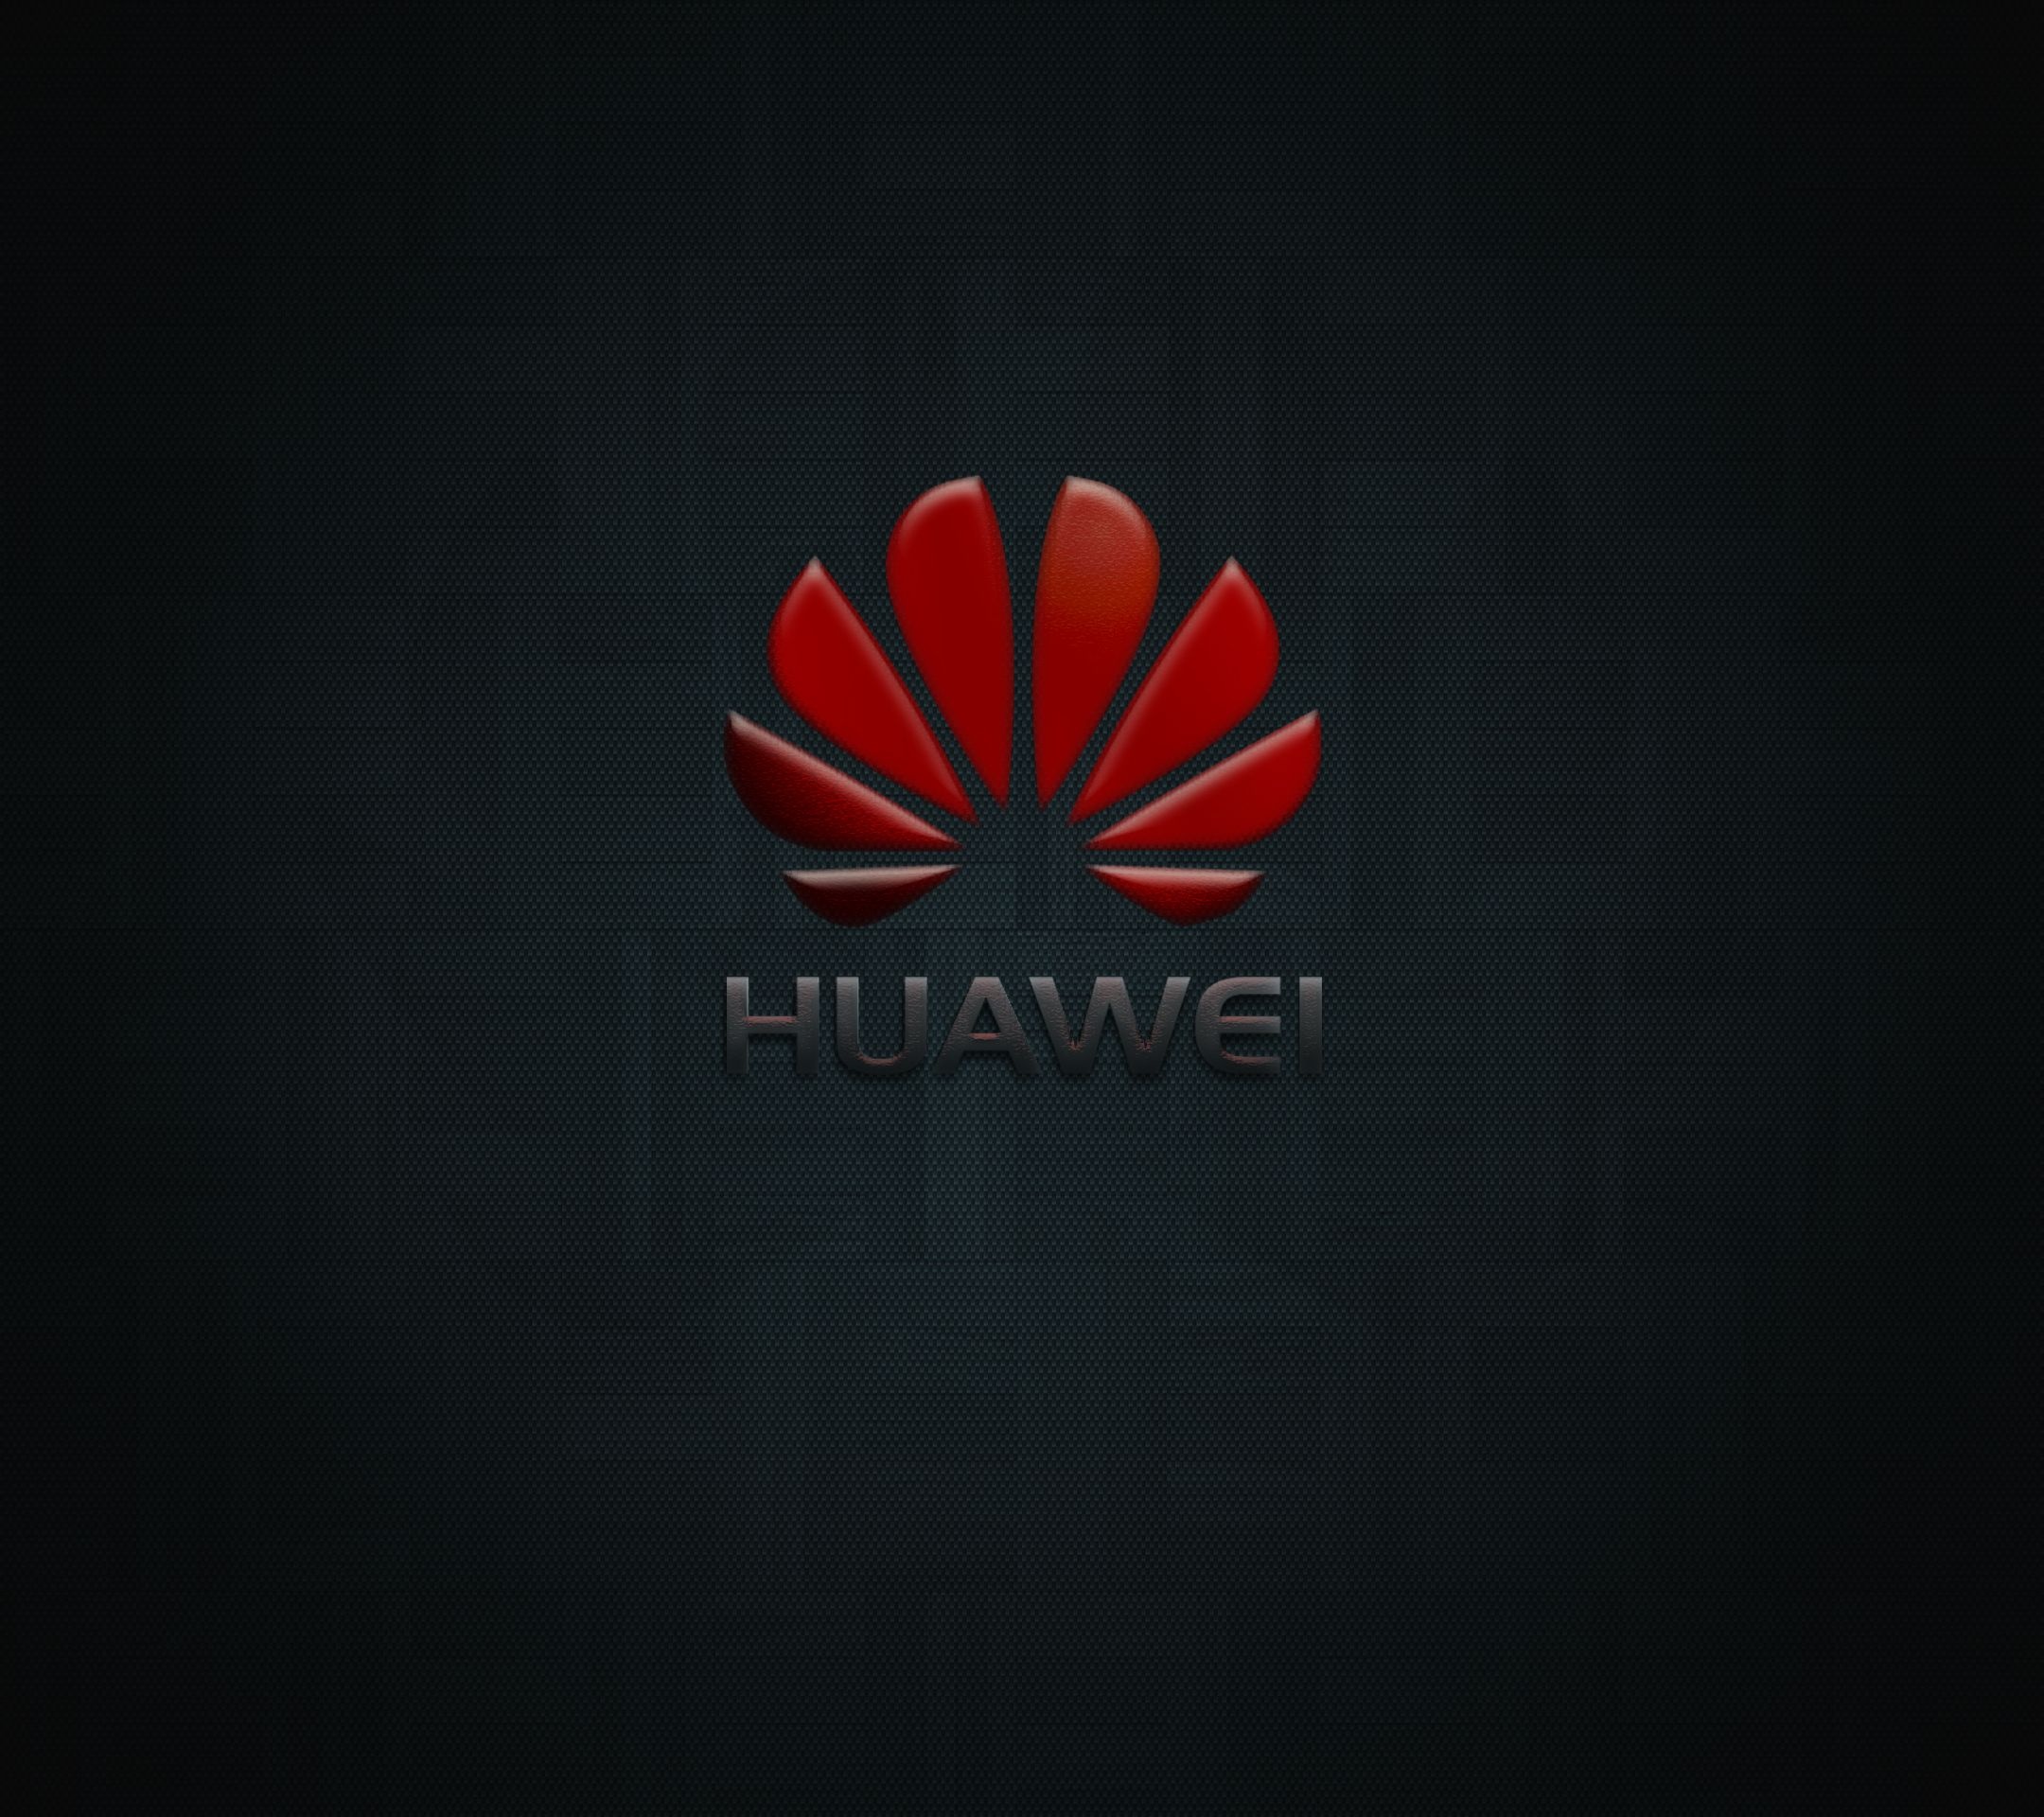 Huawei Logo Wallpapers - Top Free Huawei Logo Backgrounds 2160x1920